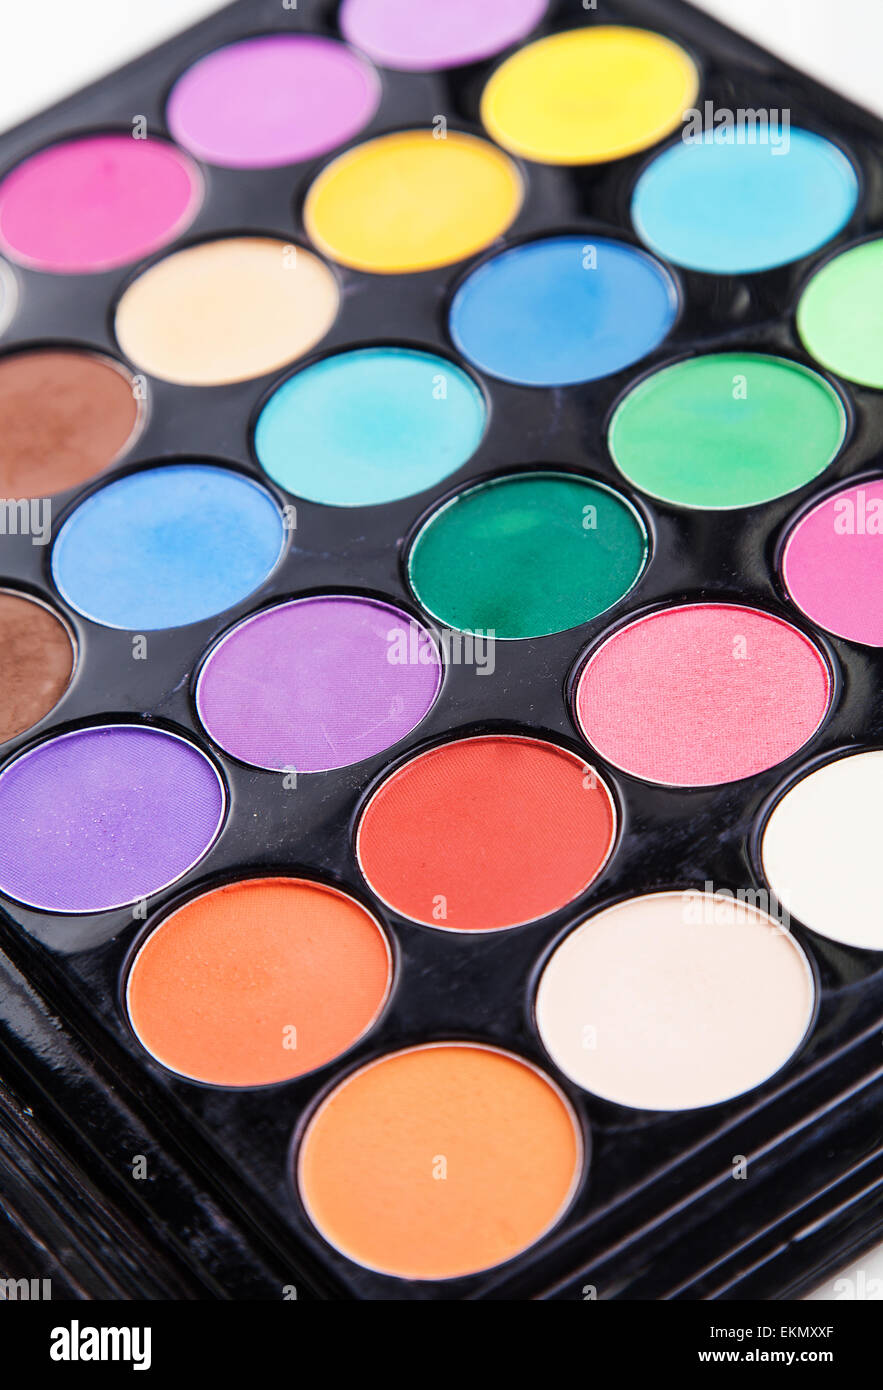 Farbpalette mit Pinsel für make-up Stockfotografie - Alamy